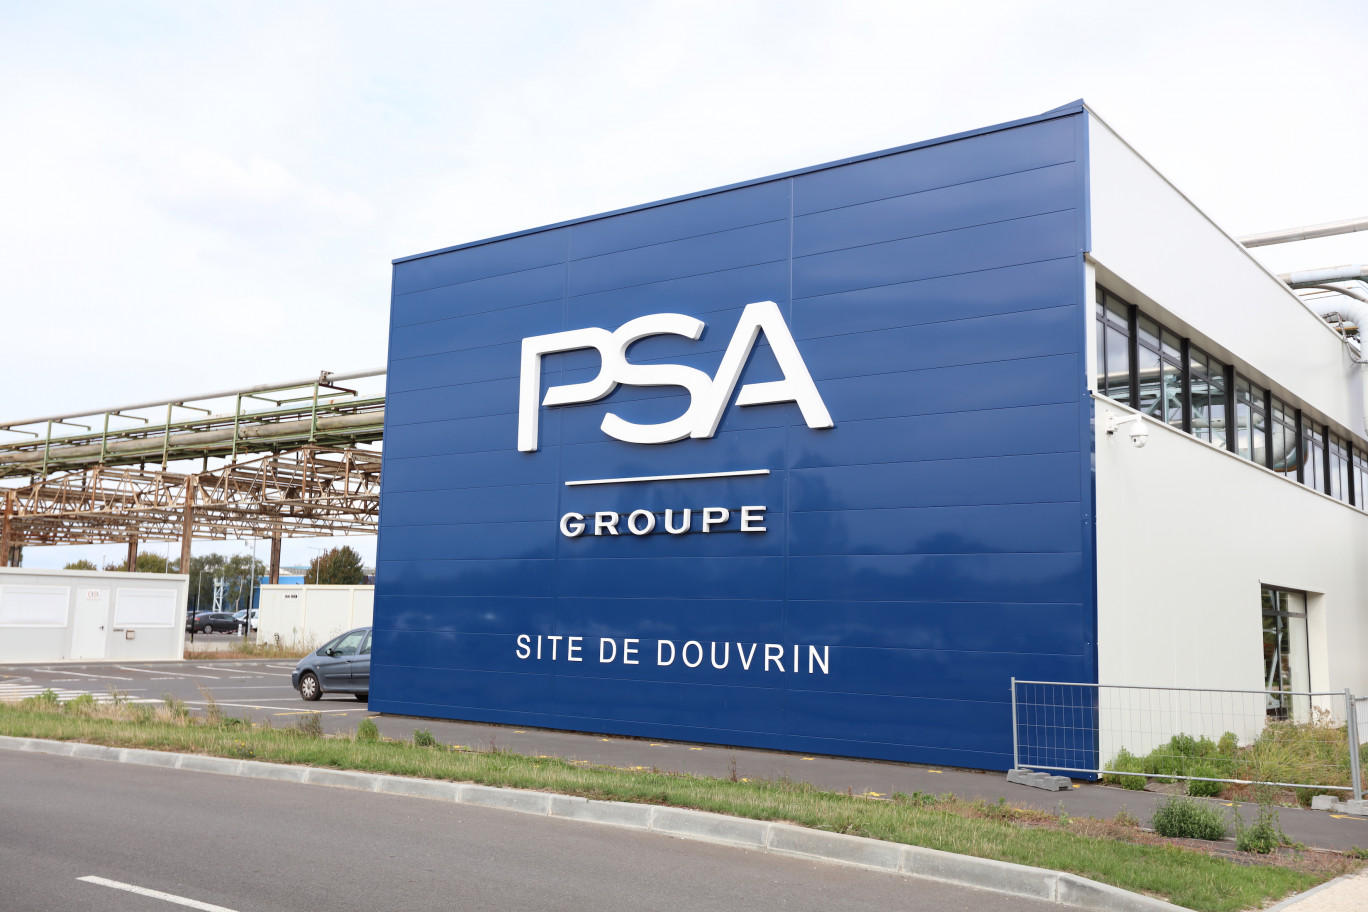 La Française de mécanique de Douvrin emploie 1 400 salariés et produit actuellement trois motorisations. © ACT’STUDIO